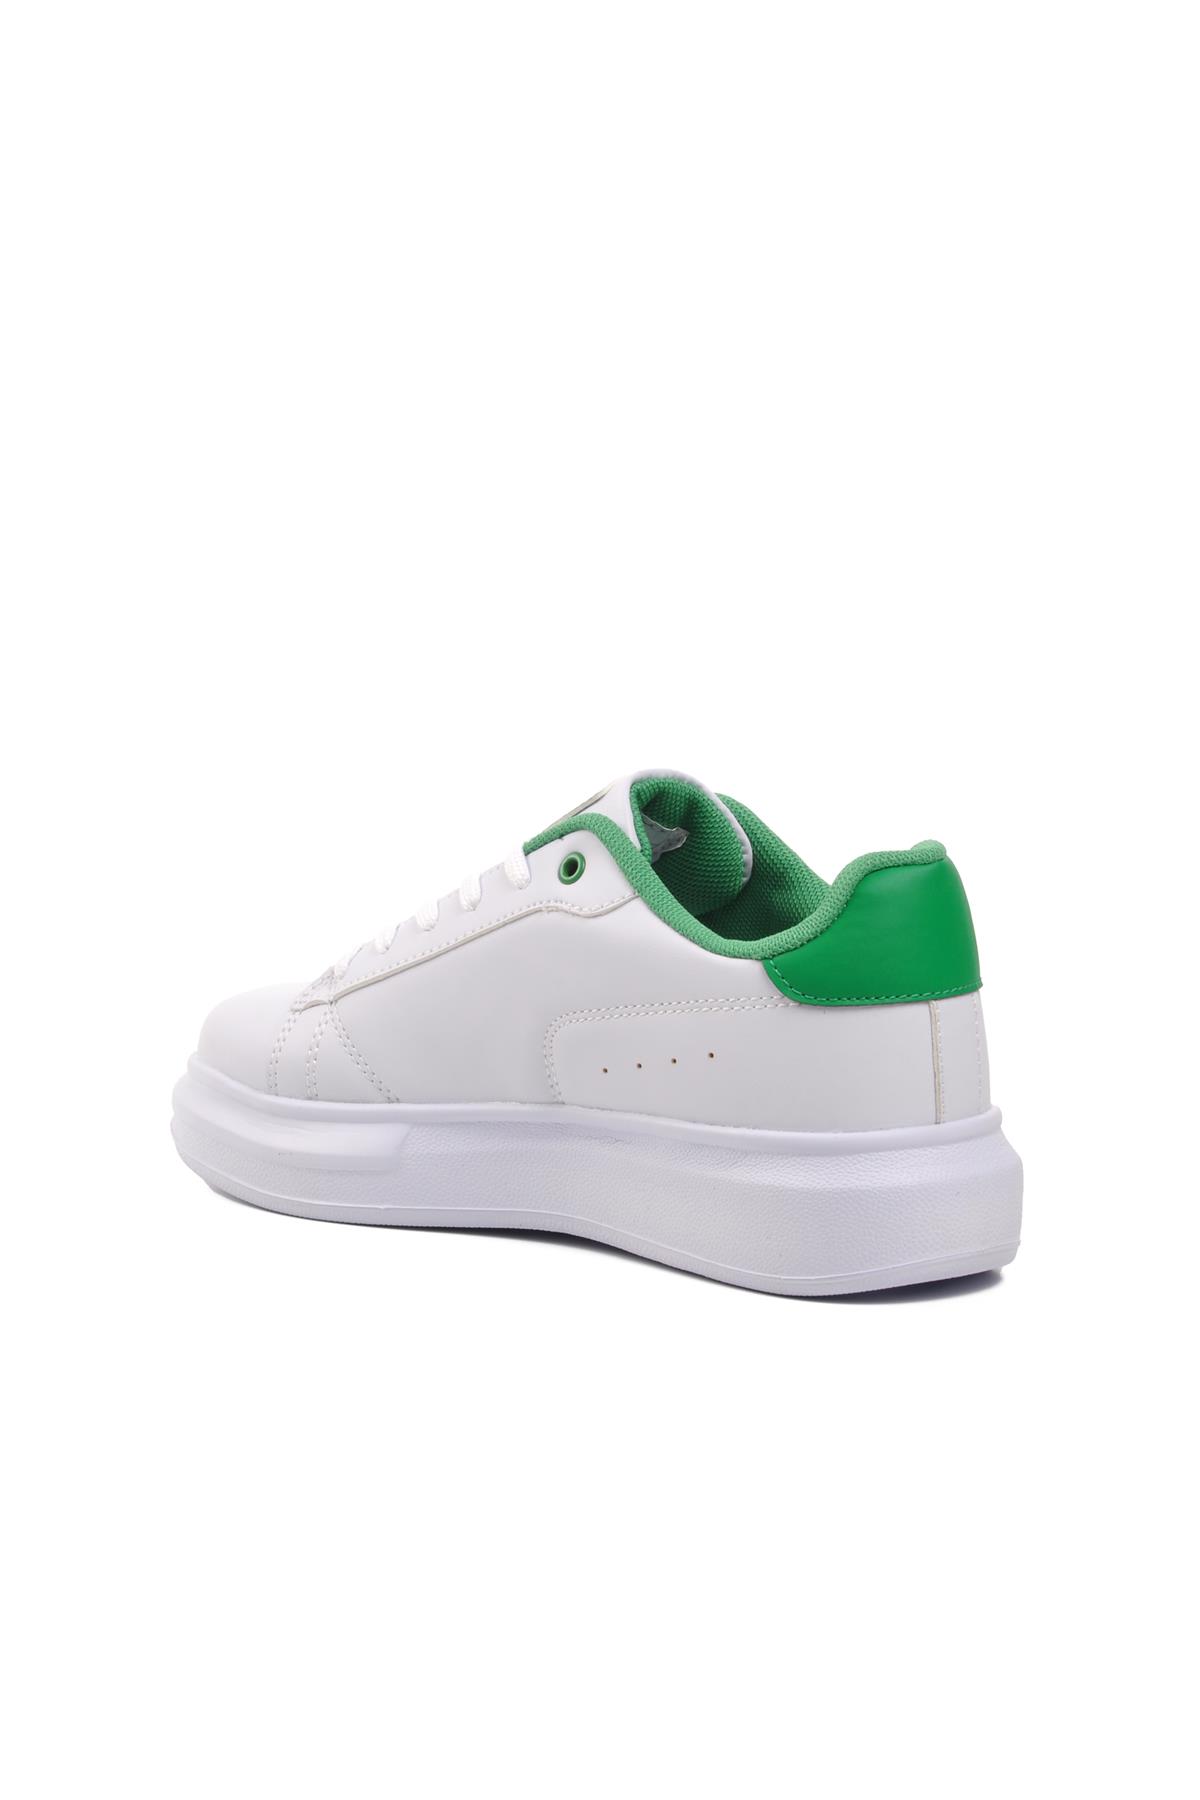 Walkway Nadia Beyaz-Yeşil Kadın Sneaker Walkway Kadın Spor Ayakkabı